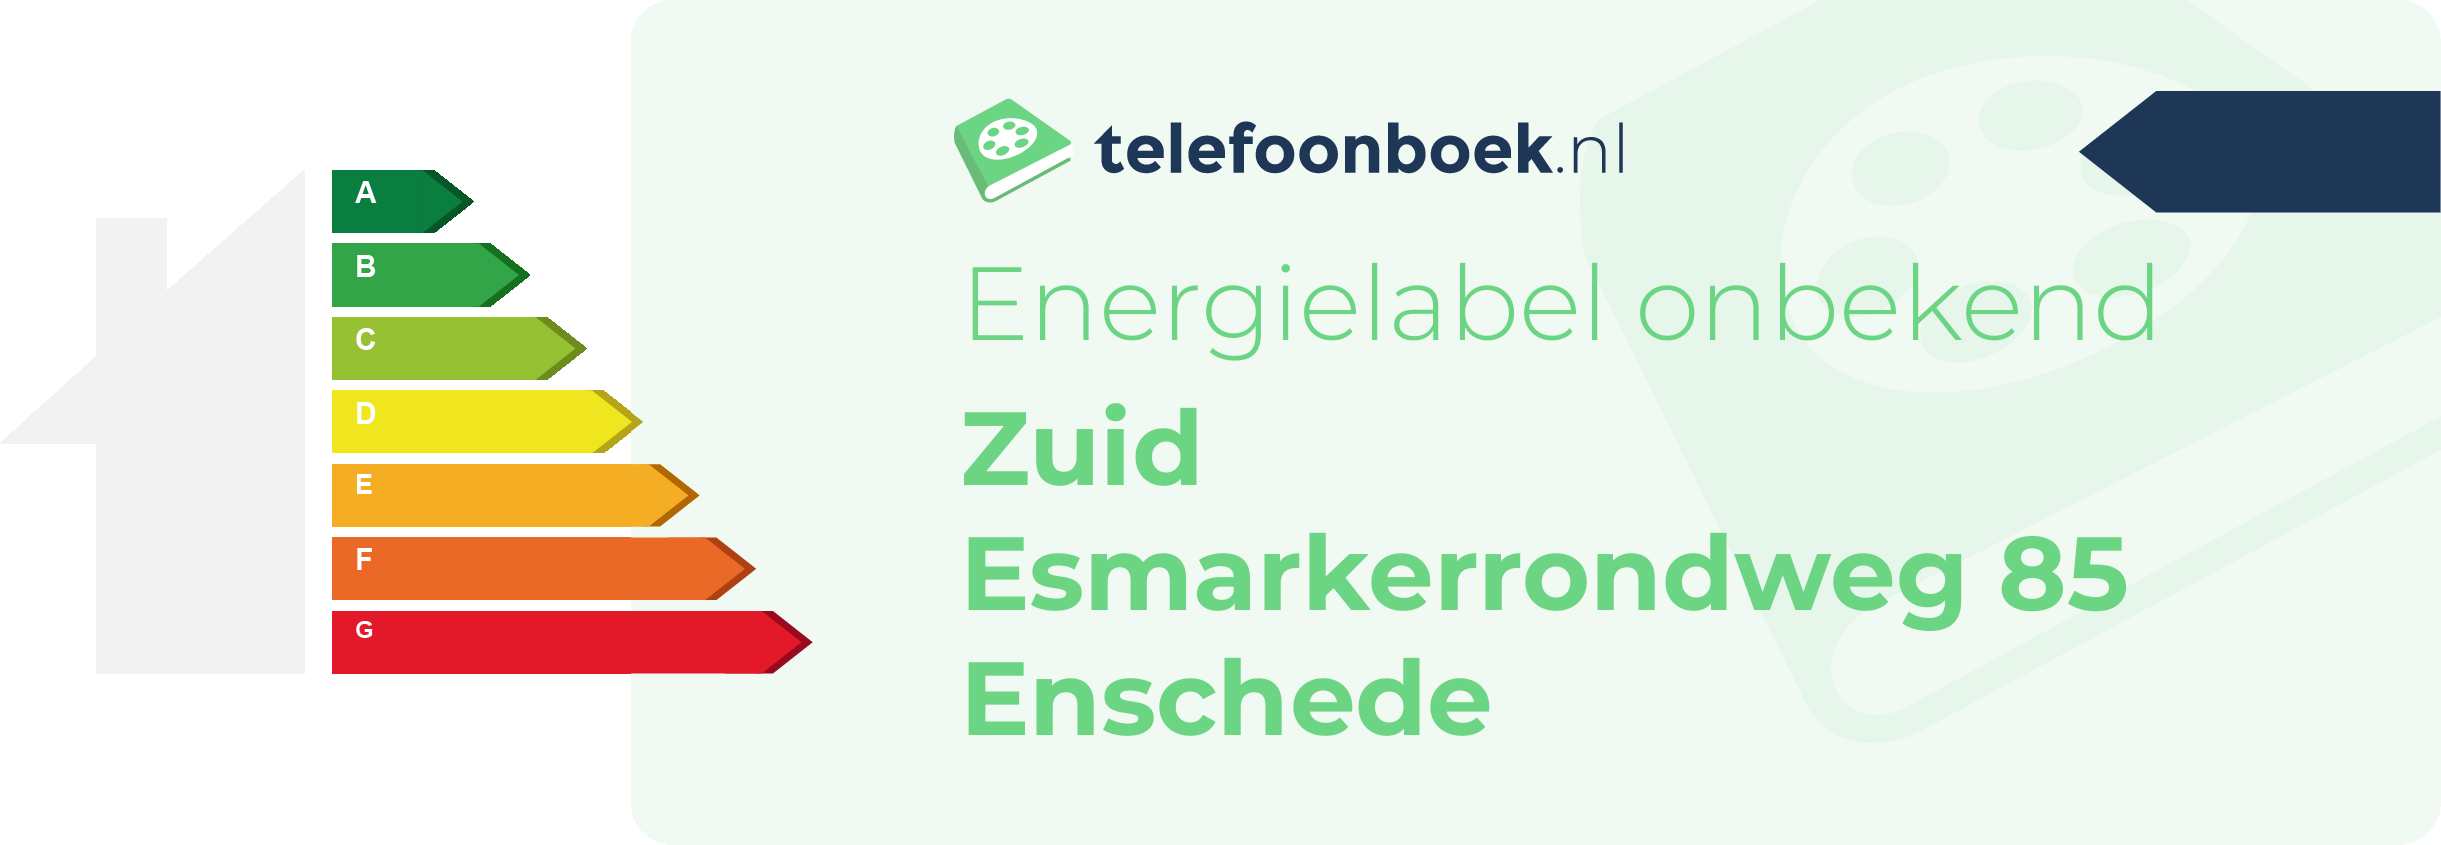 Energielabel Zuid Esmarkerrondweg 85 Enschede